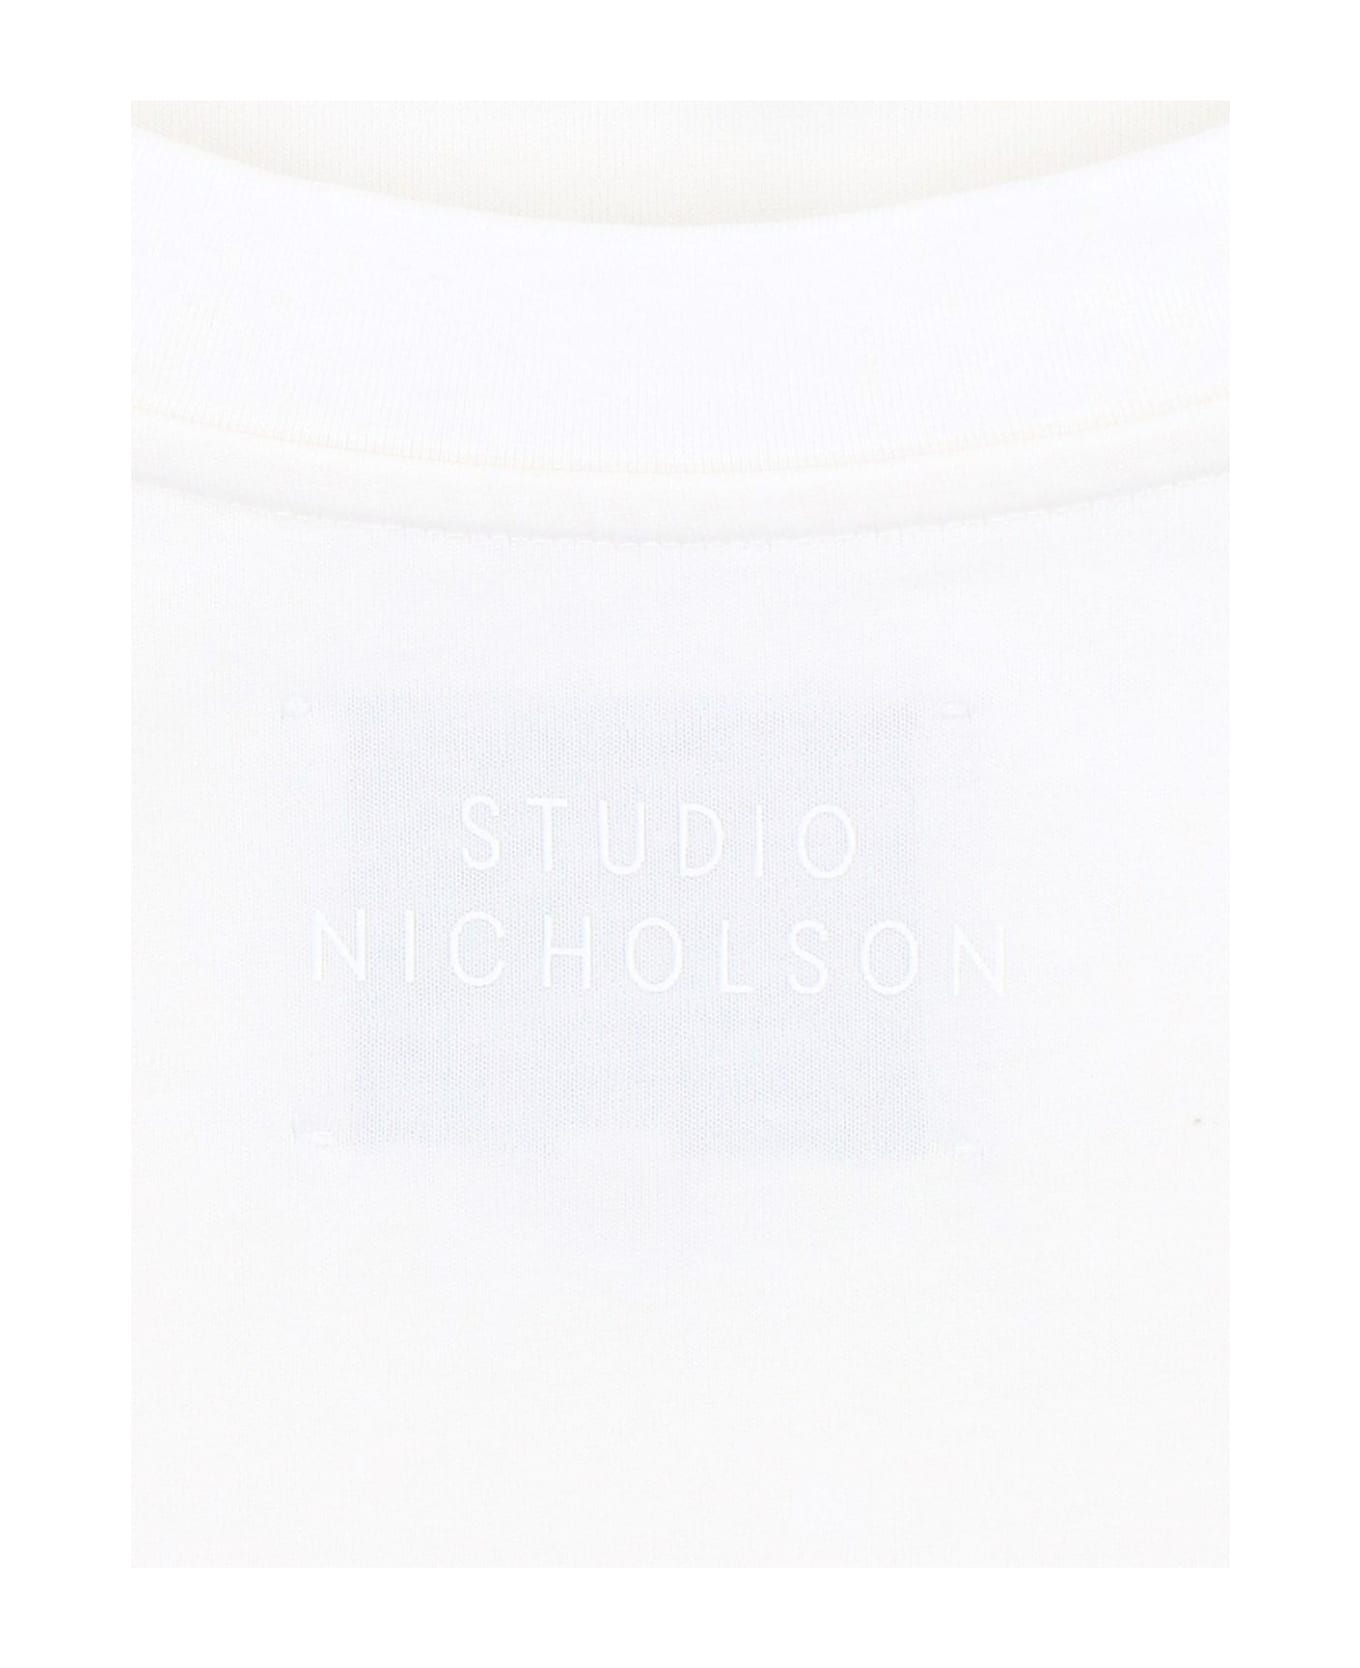 Studio Nicholson Oversize T-shirt - WHITE シャツ